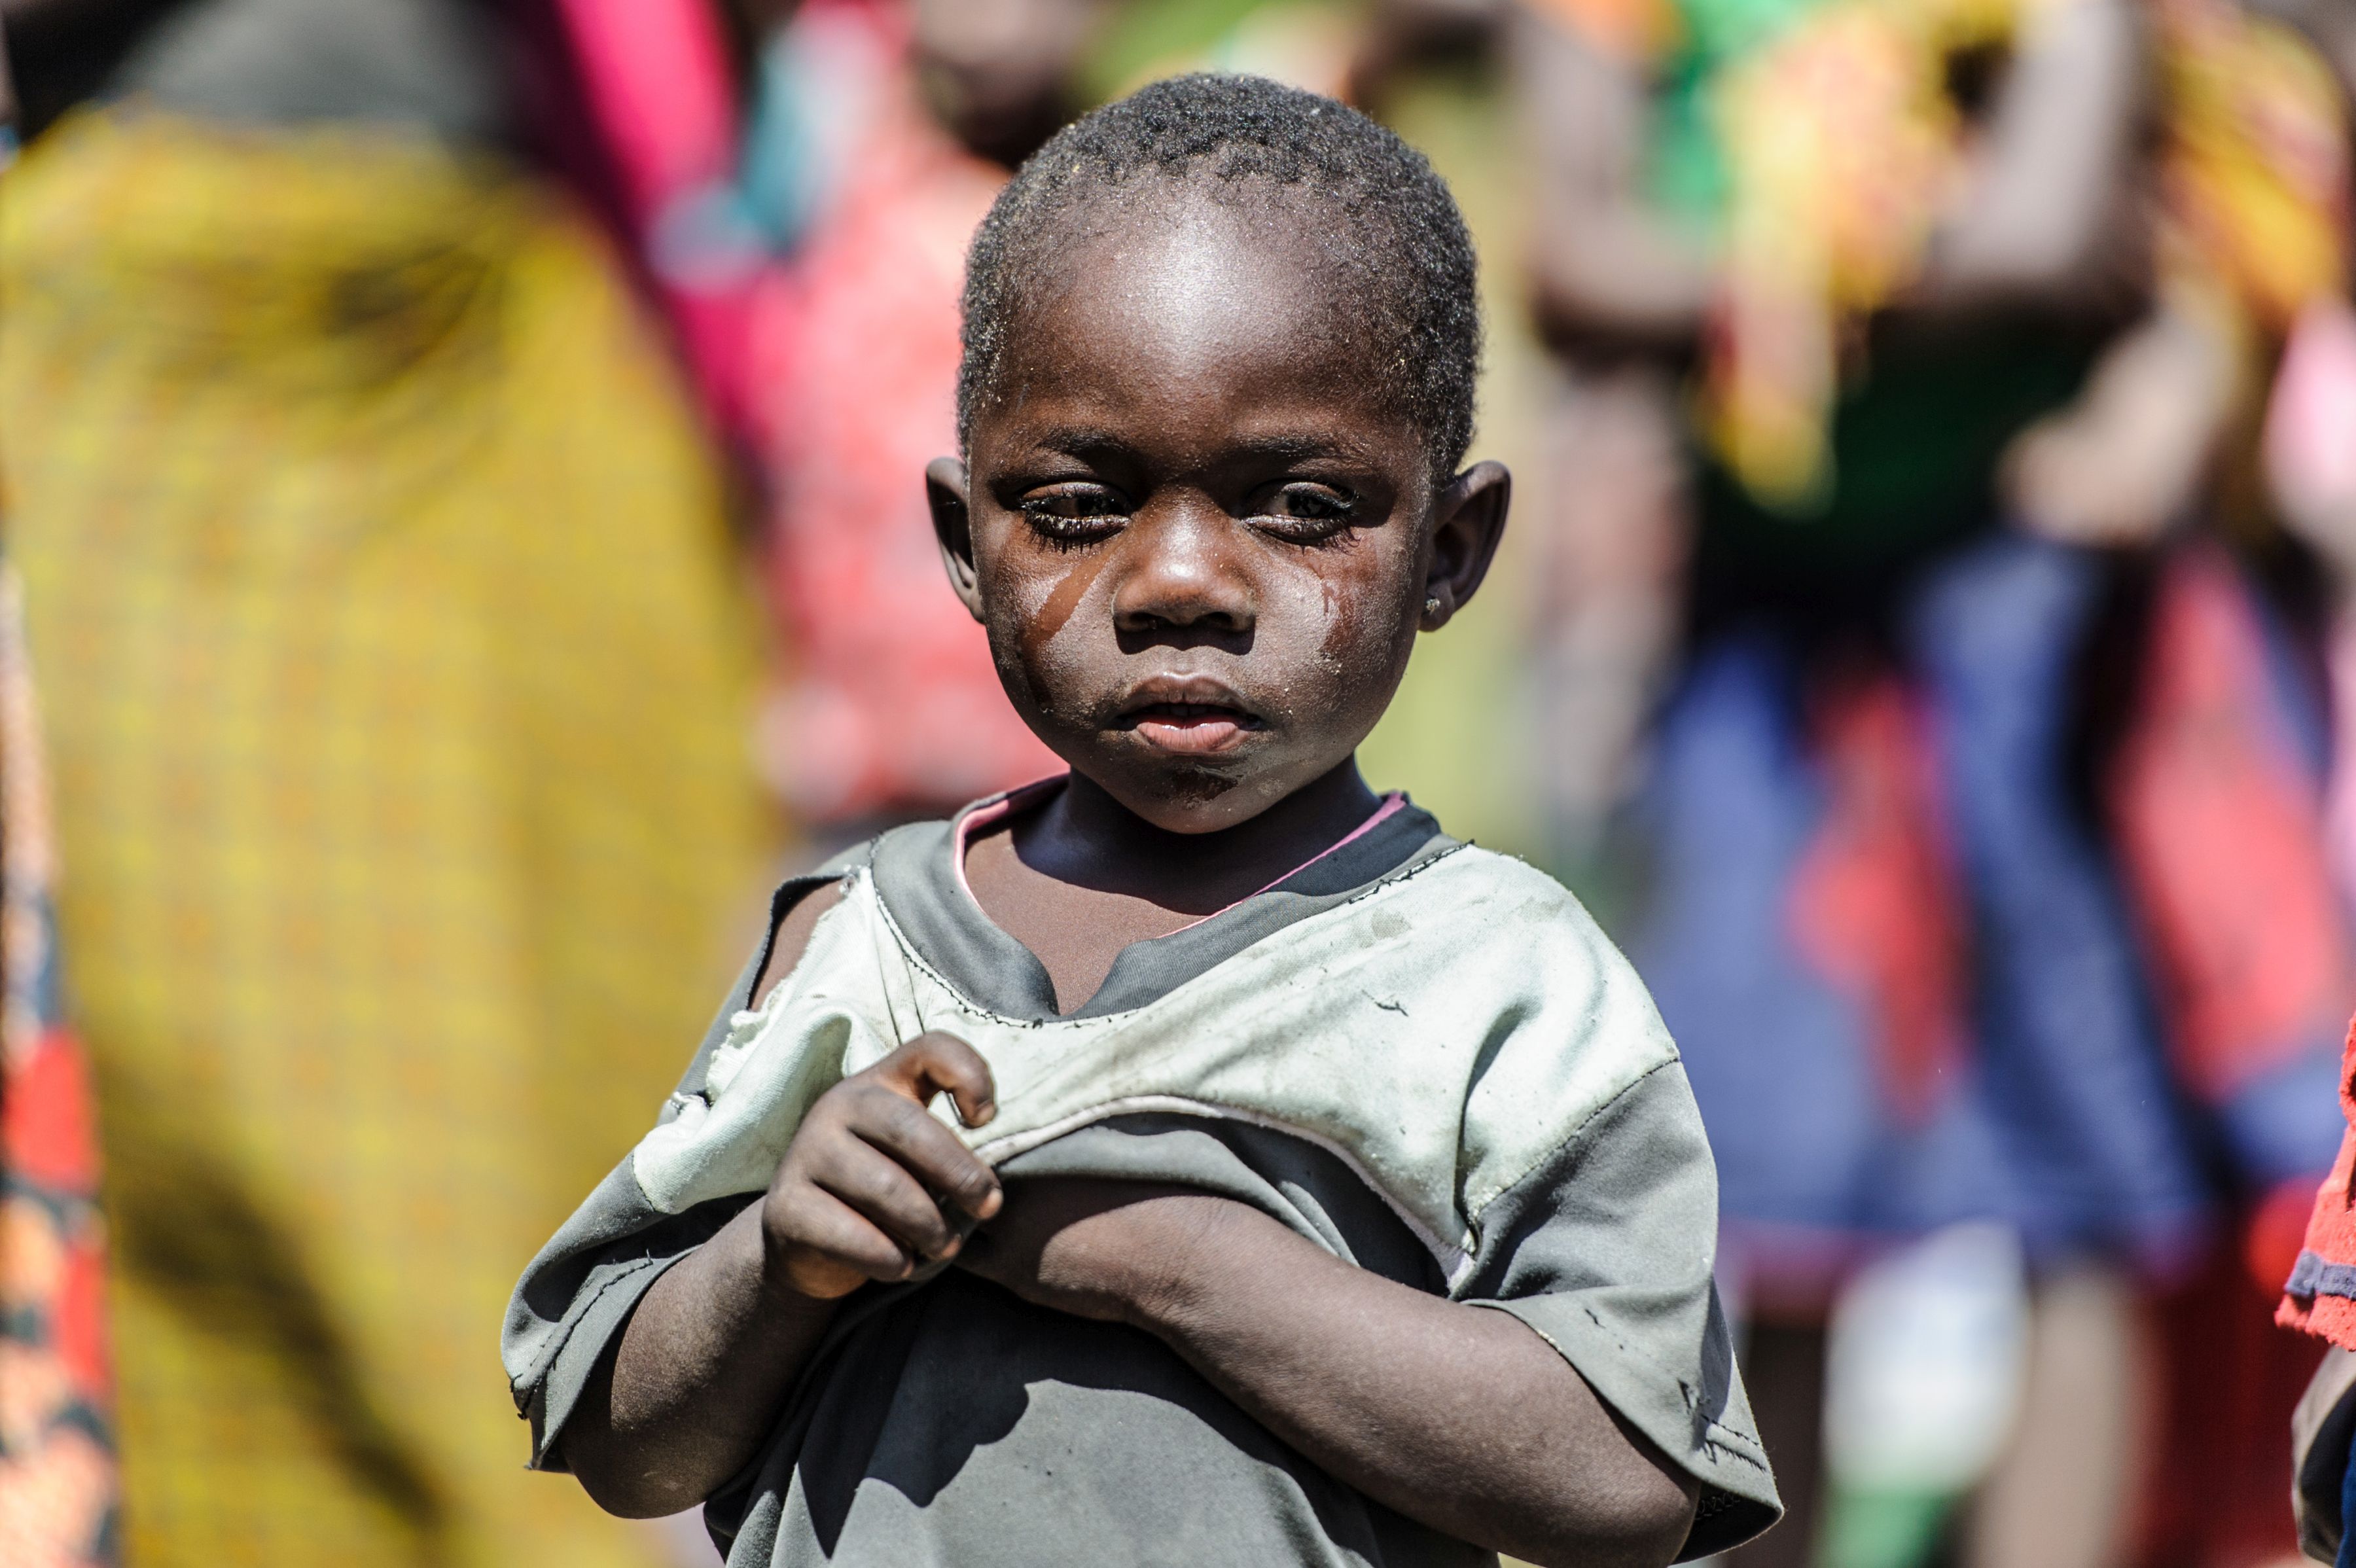 Fermare il tracoma per sempre si può!-Sightsavers Italia Onlus